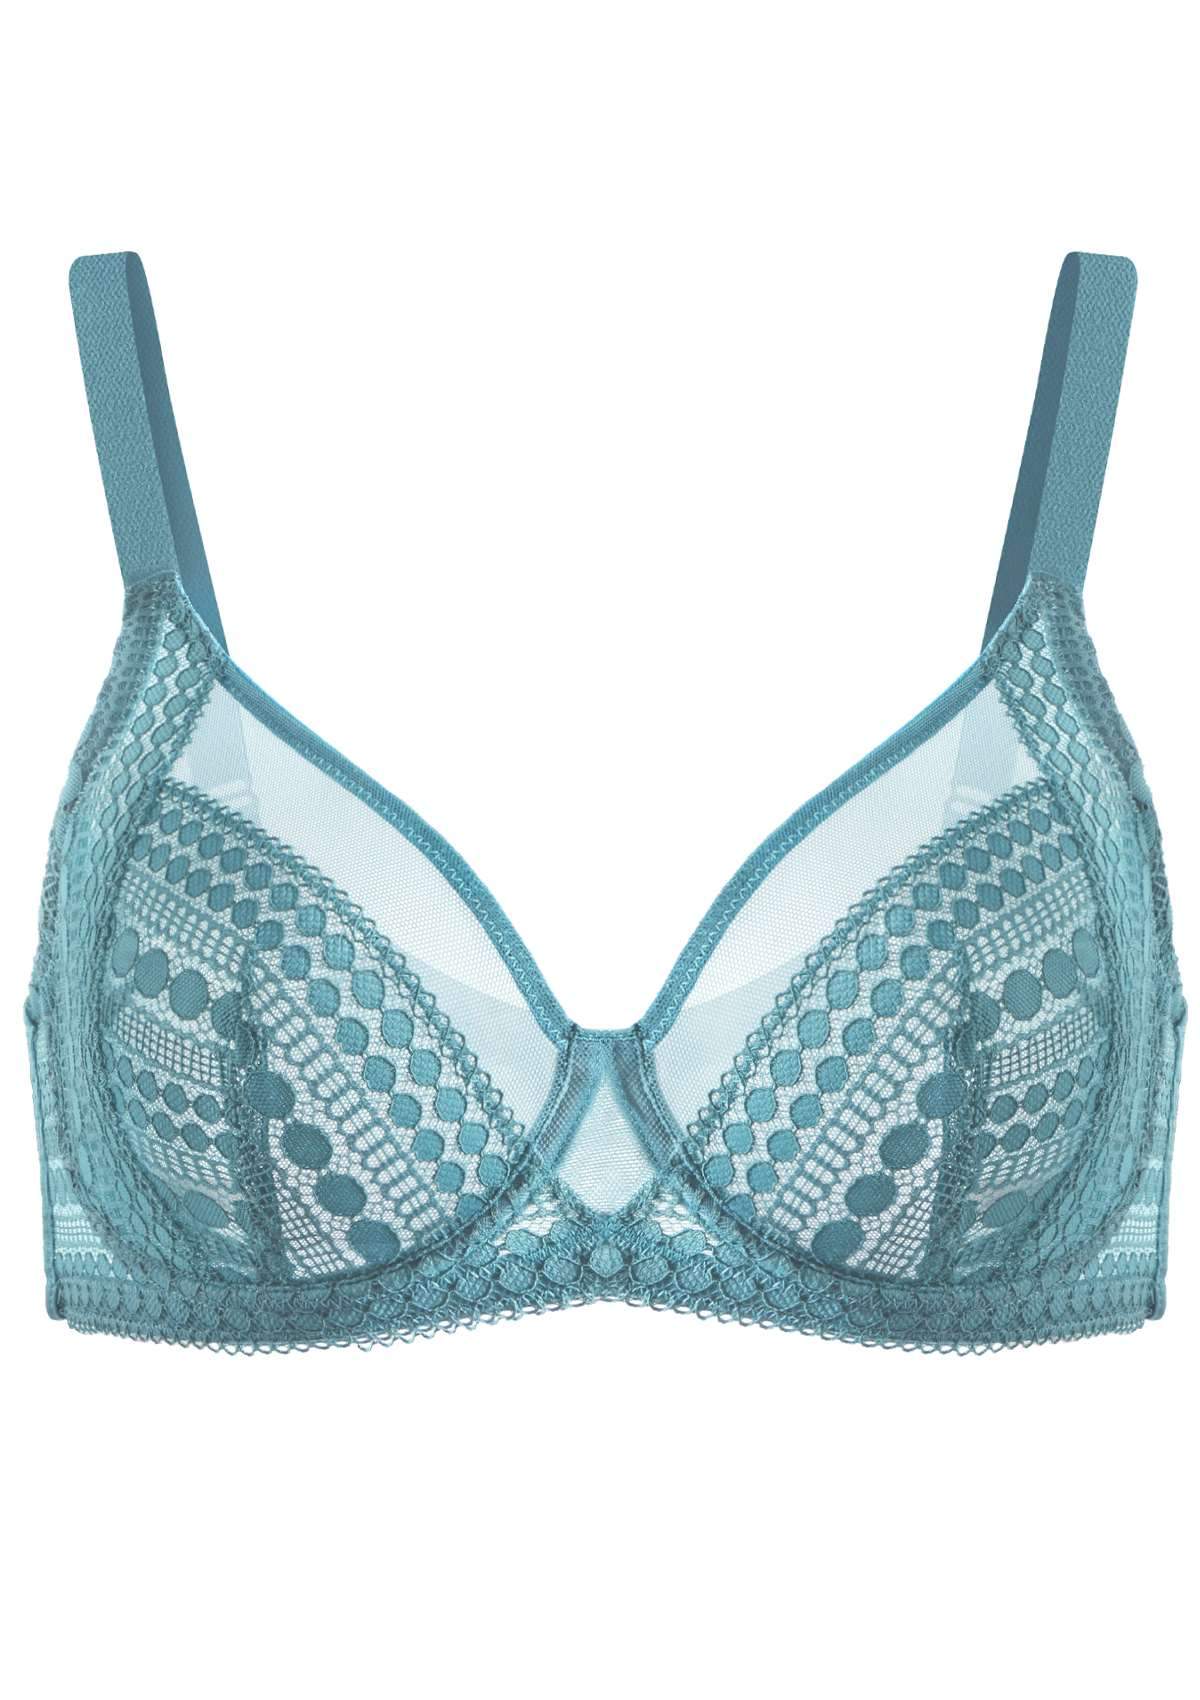 HSIA Heroine Matching Bra And Underwear Set: Bra For Big Boobs - Brittany Blue / 42 / C